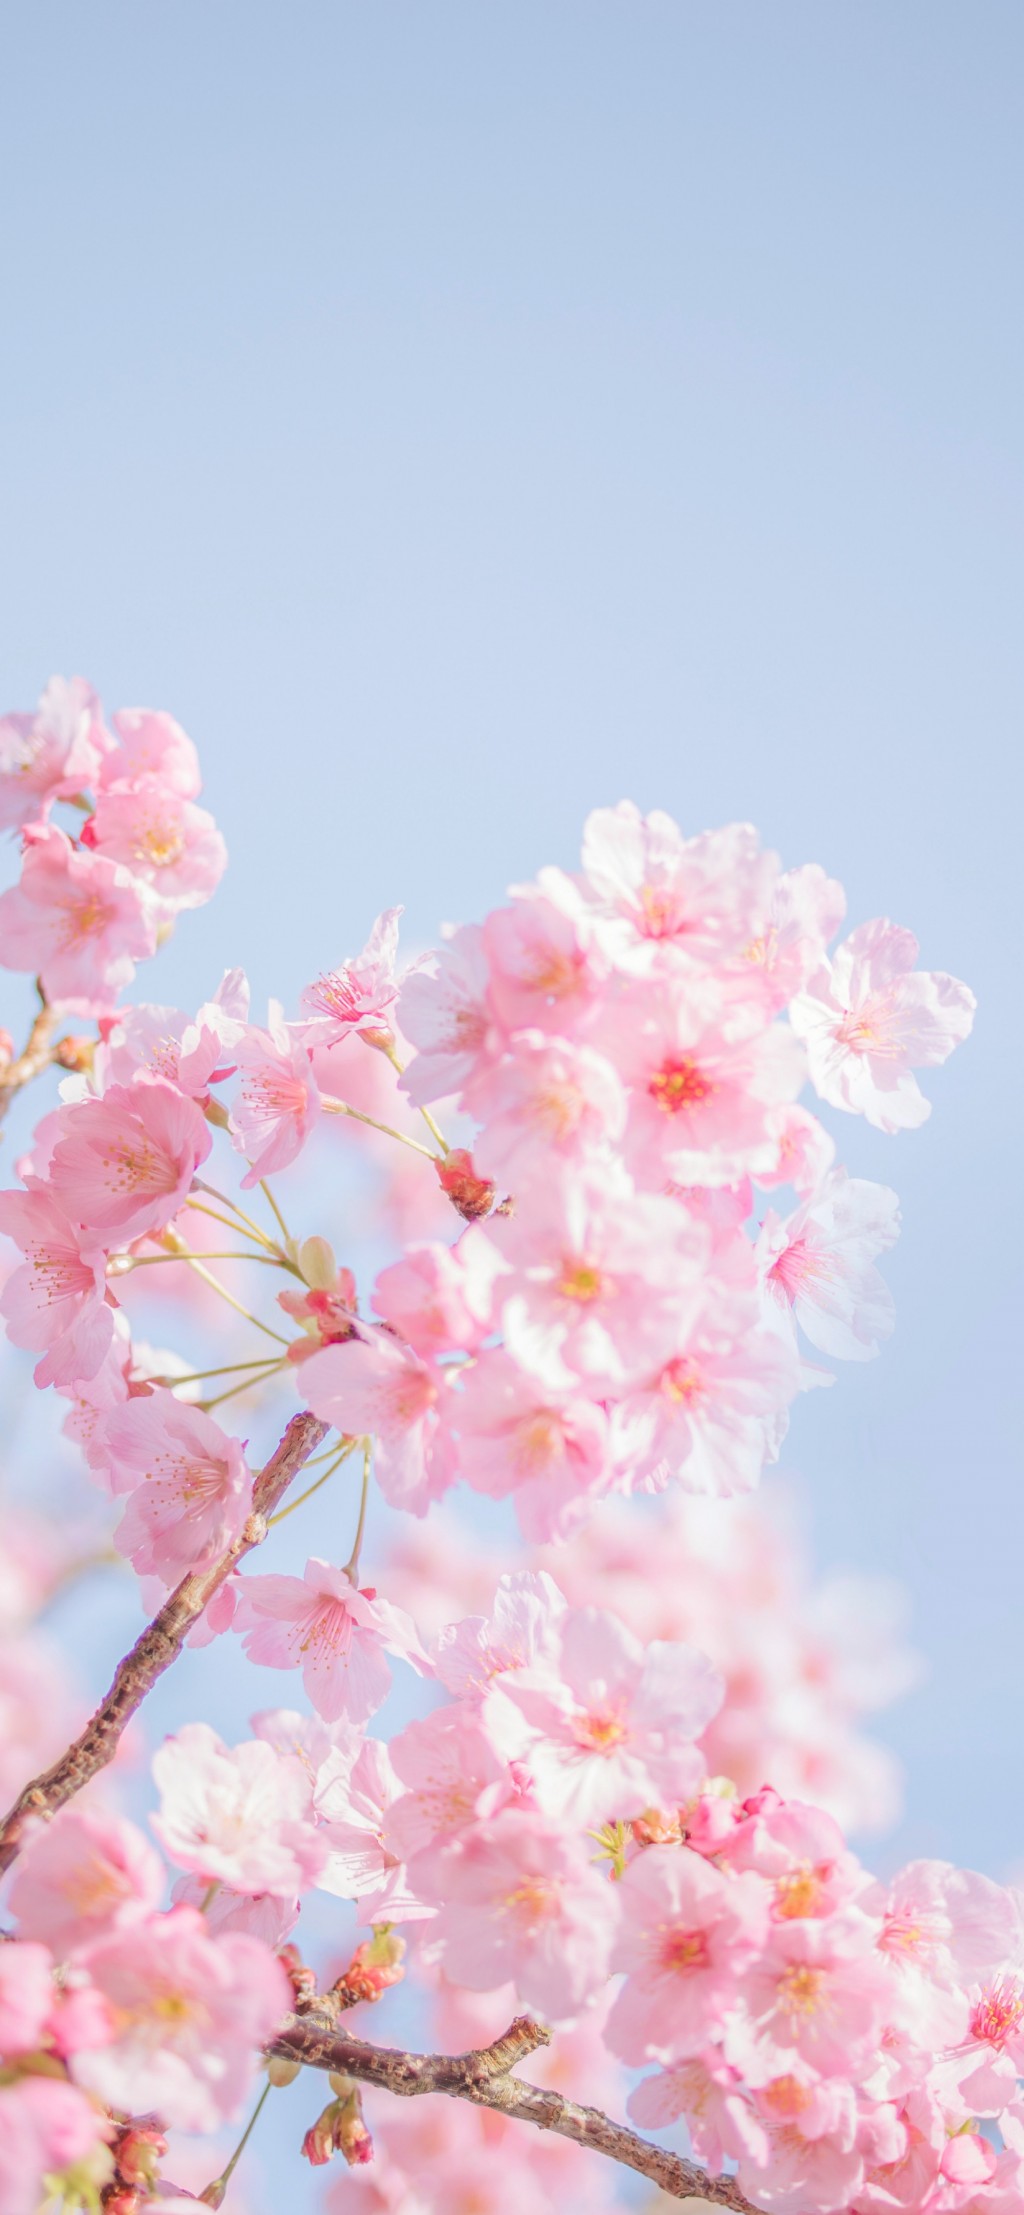 春暖花开唯美鲜花风景手机壁纸